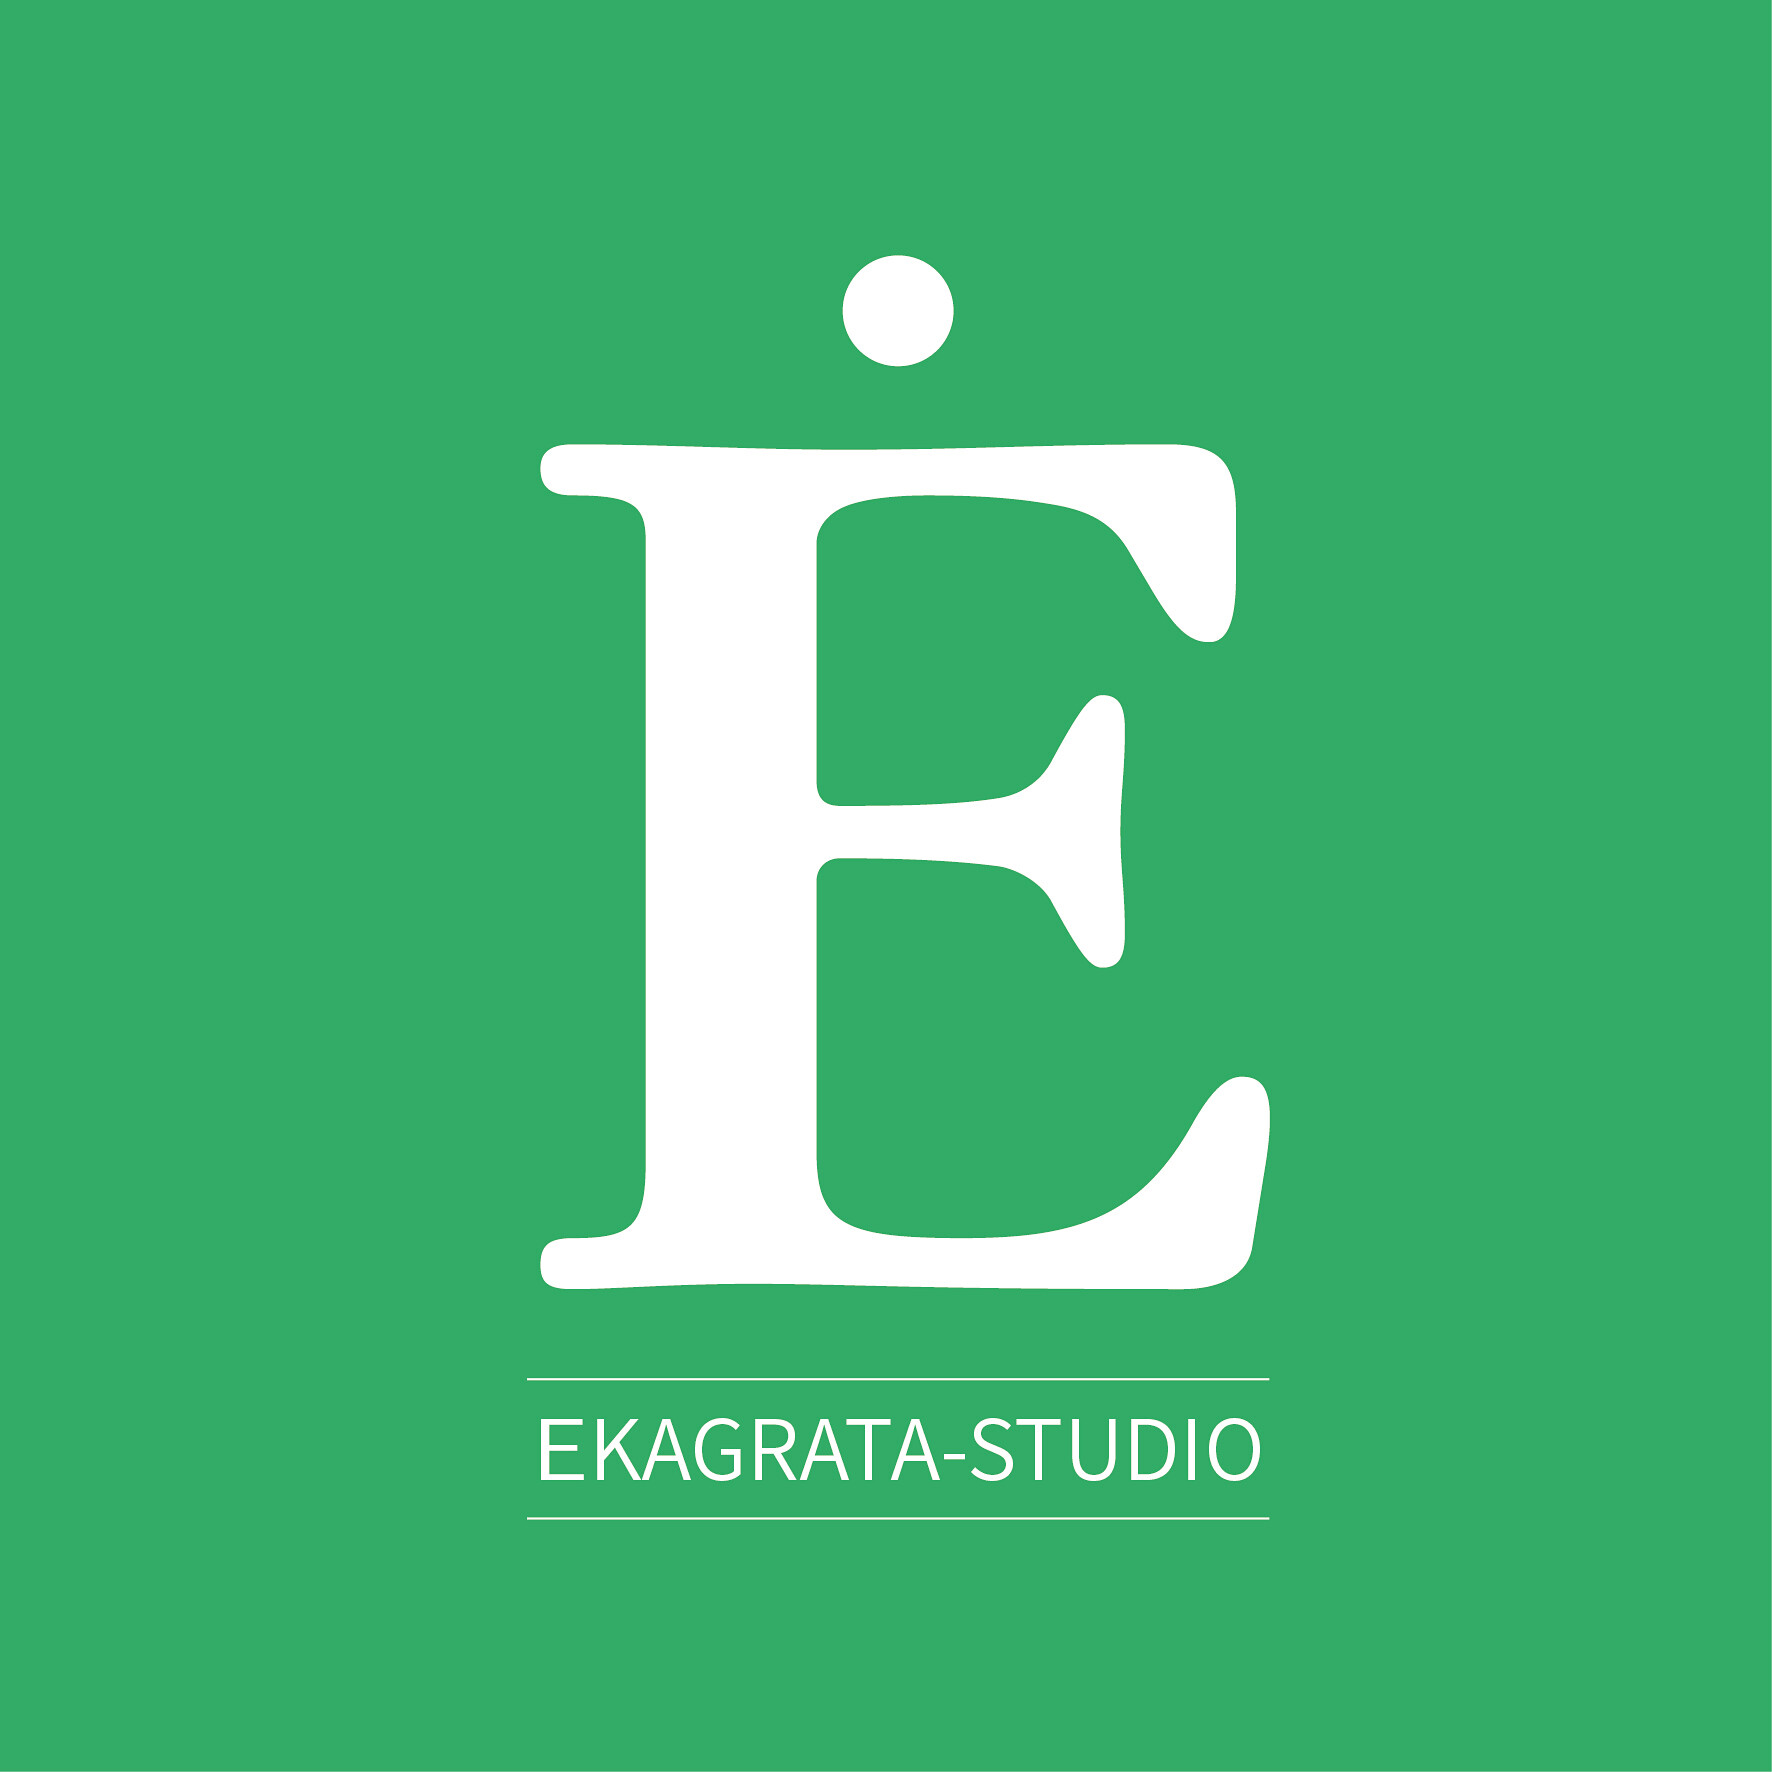 EKAGRATA-STUDIO